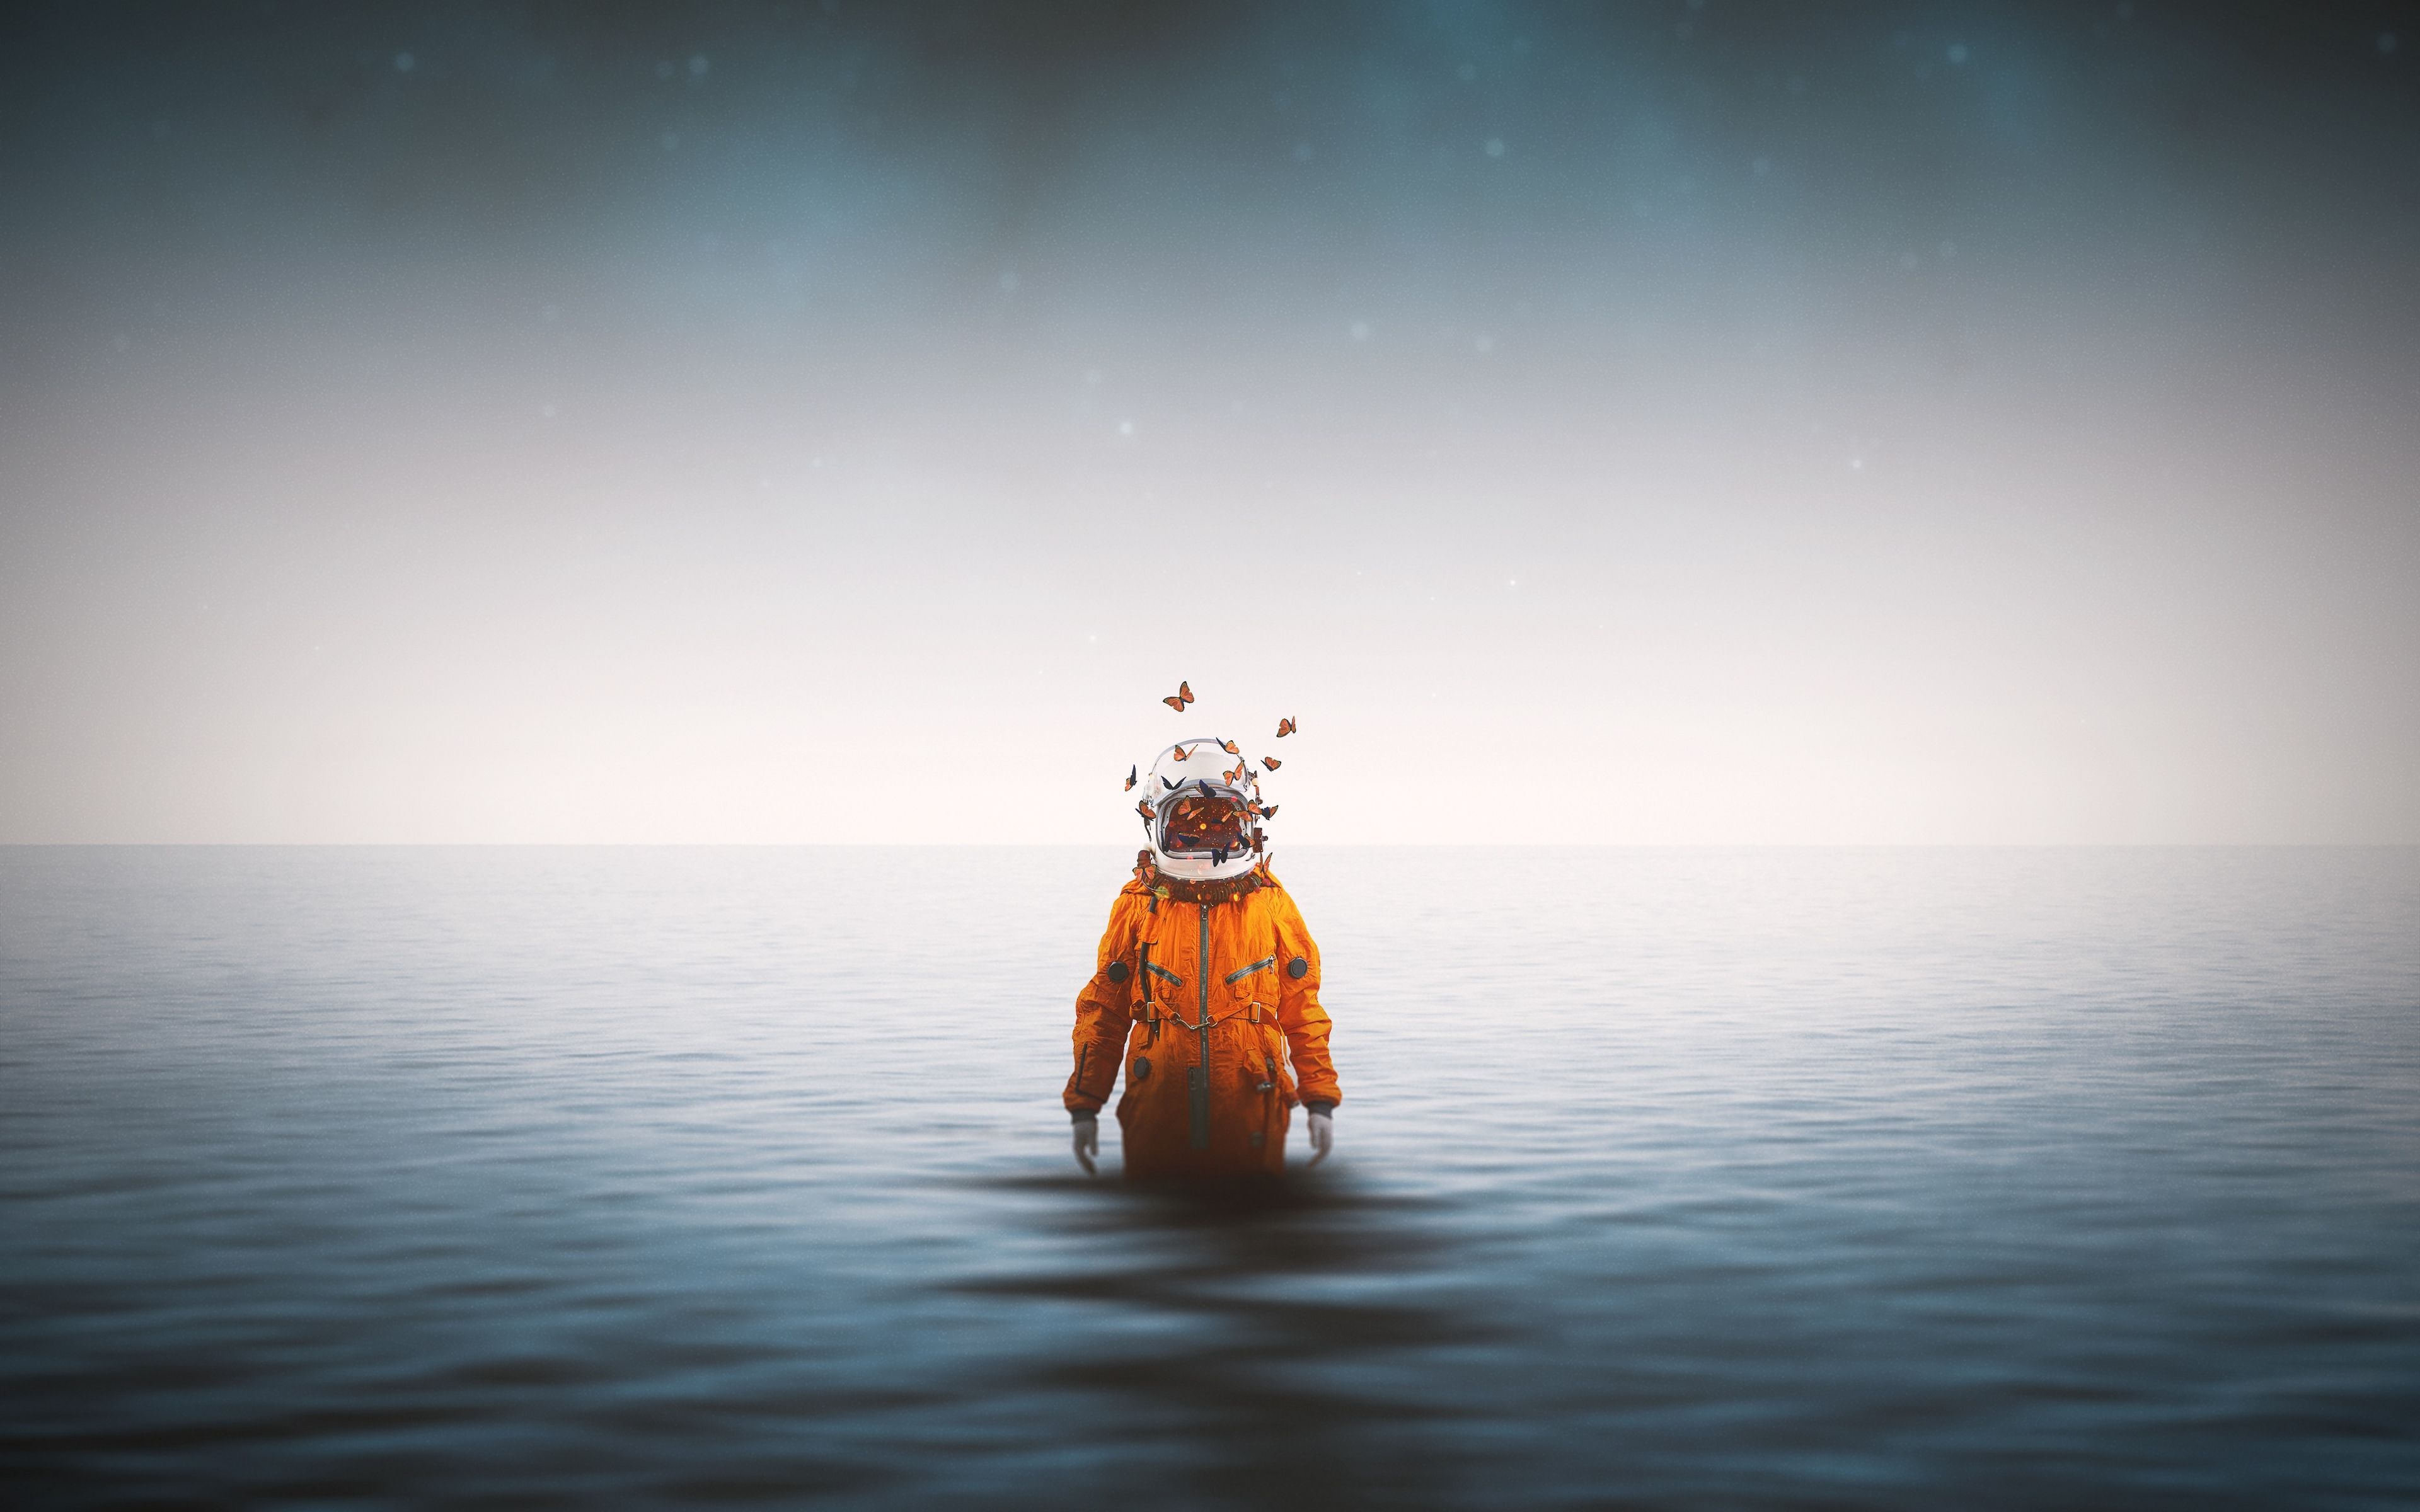 Astronaut Standing Inside Ocean Butterflies Around Helmet 4k 4k HD 4k Wallpaper, Image, Background, Photo and Picture